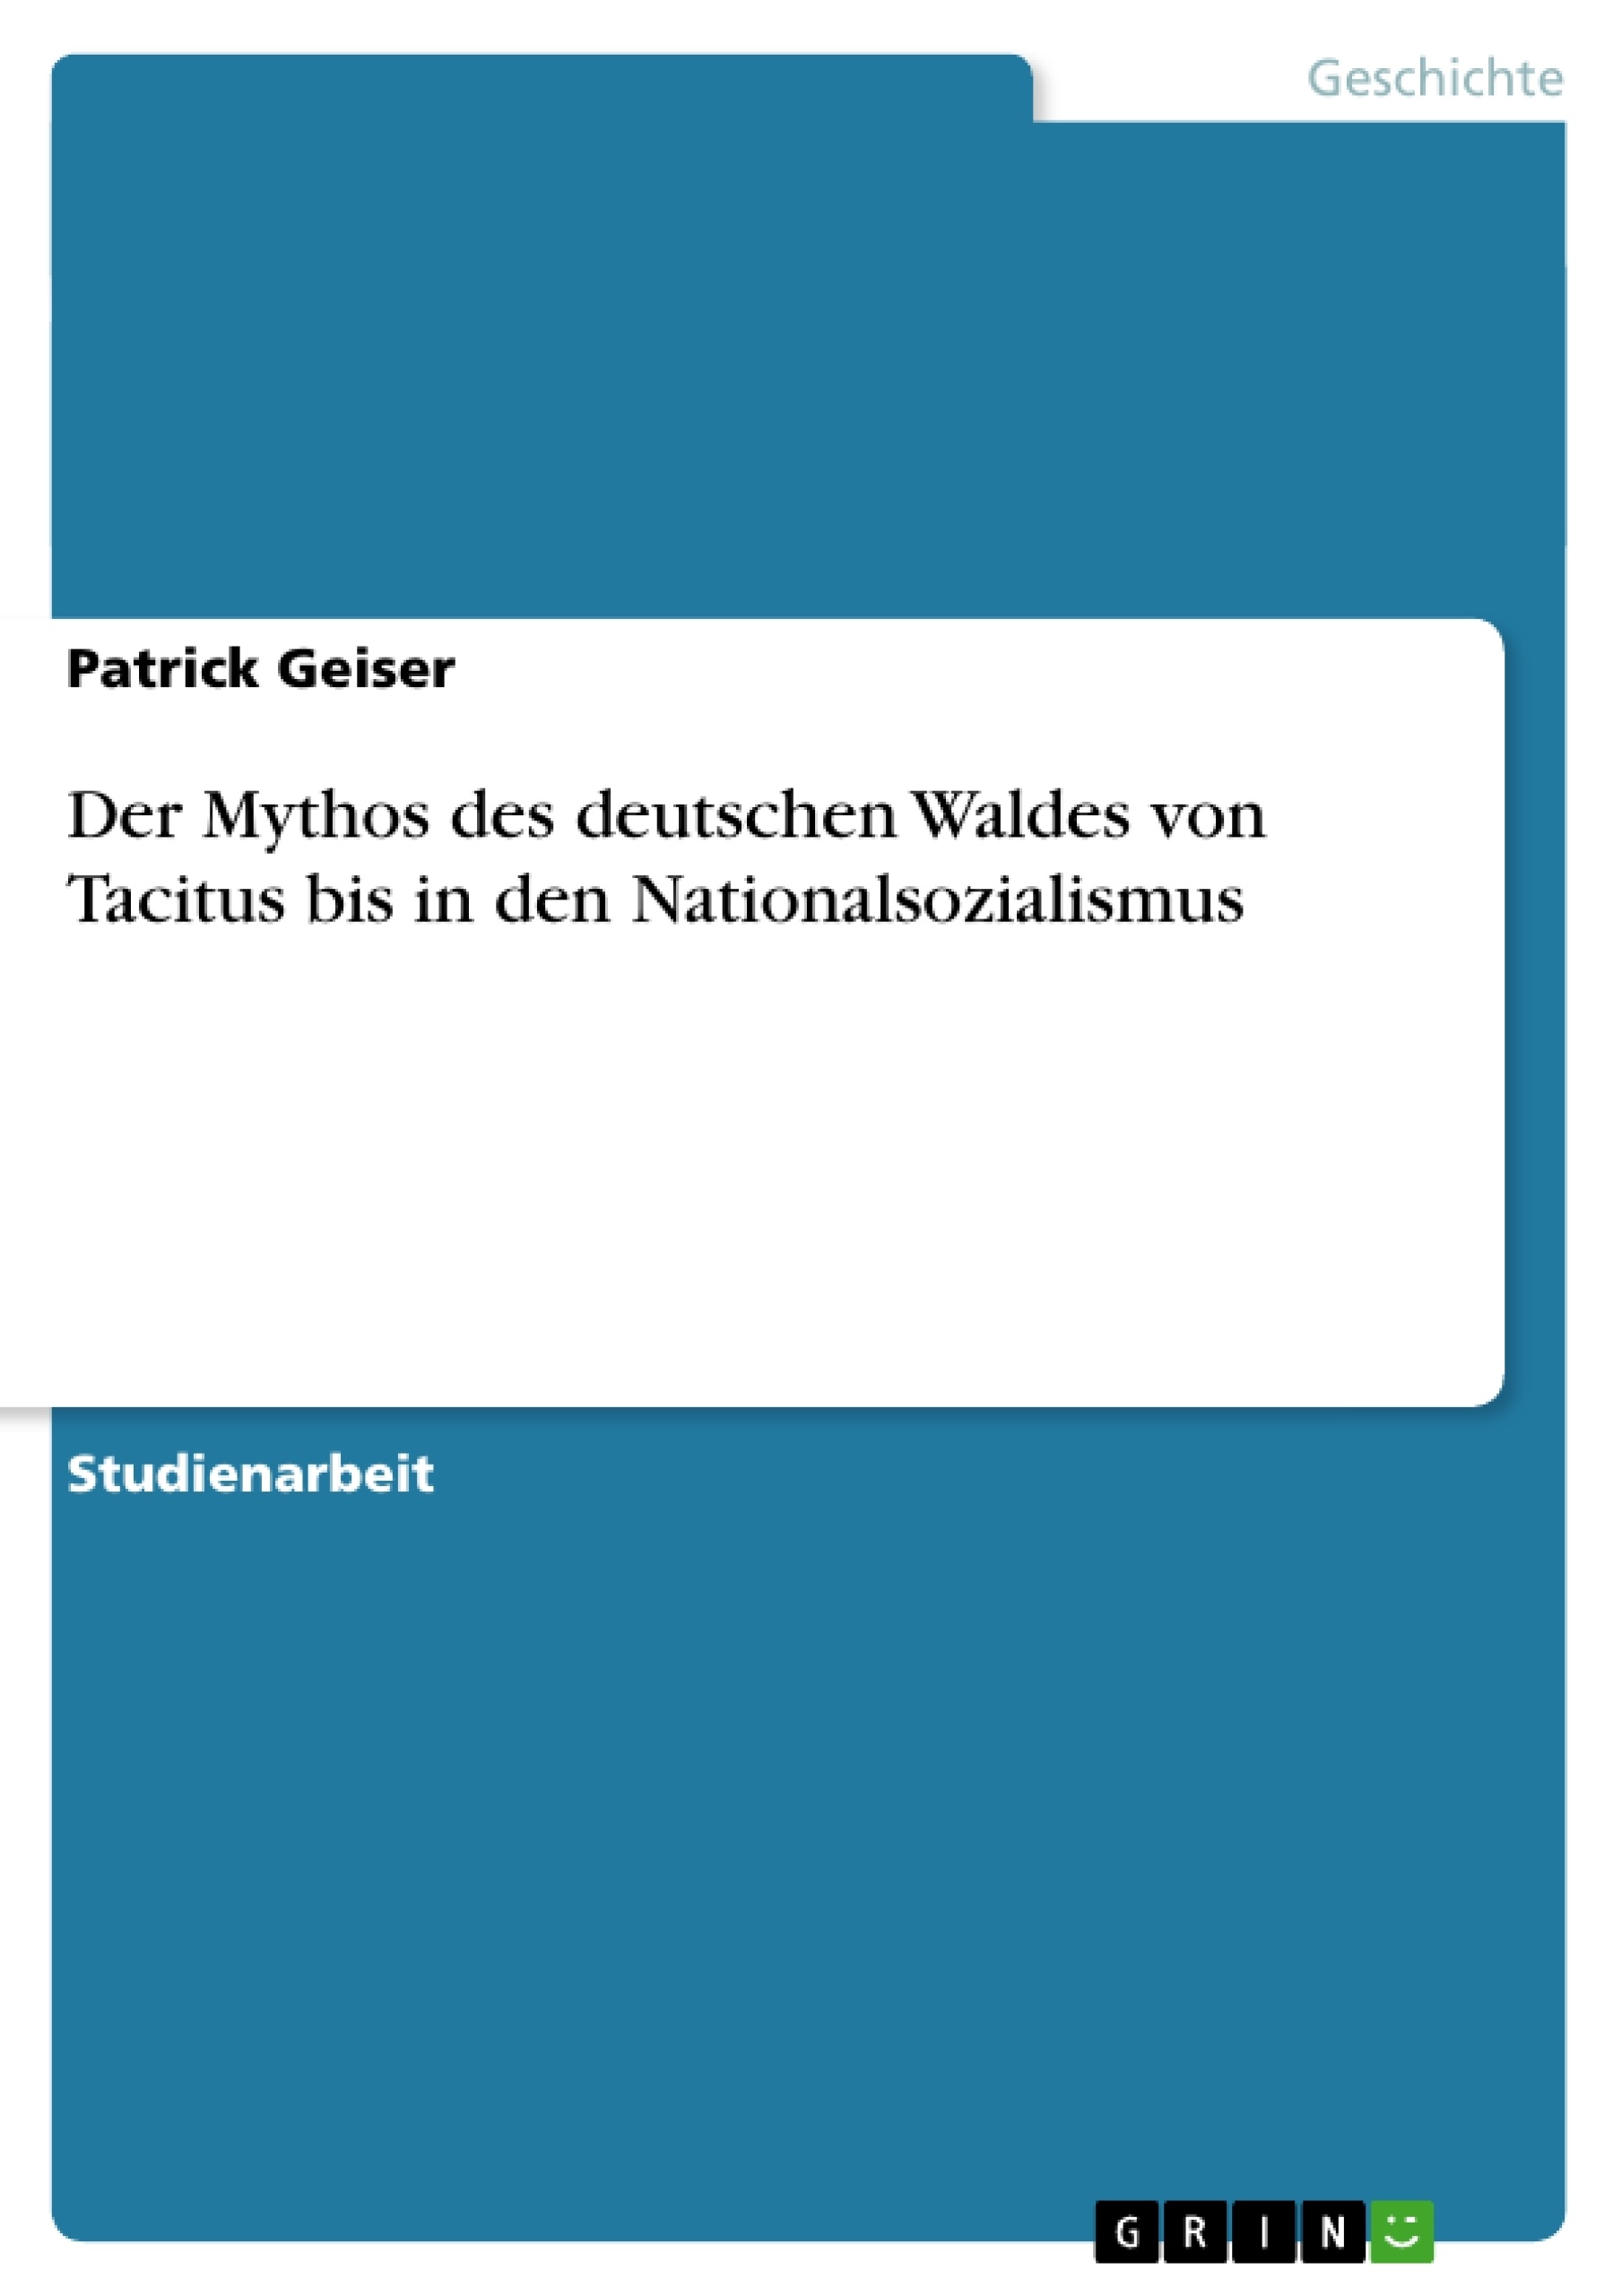 Título: Der Mythos des deutschen Waldes von Tacitus bis in den Nationalsozialismus